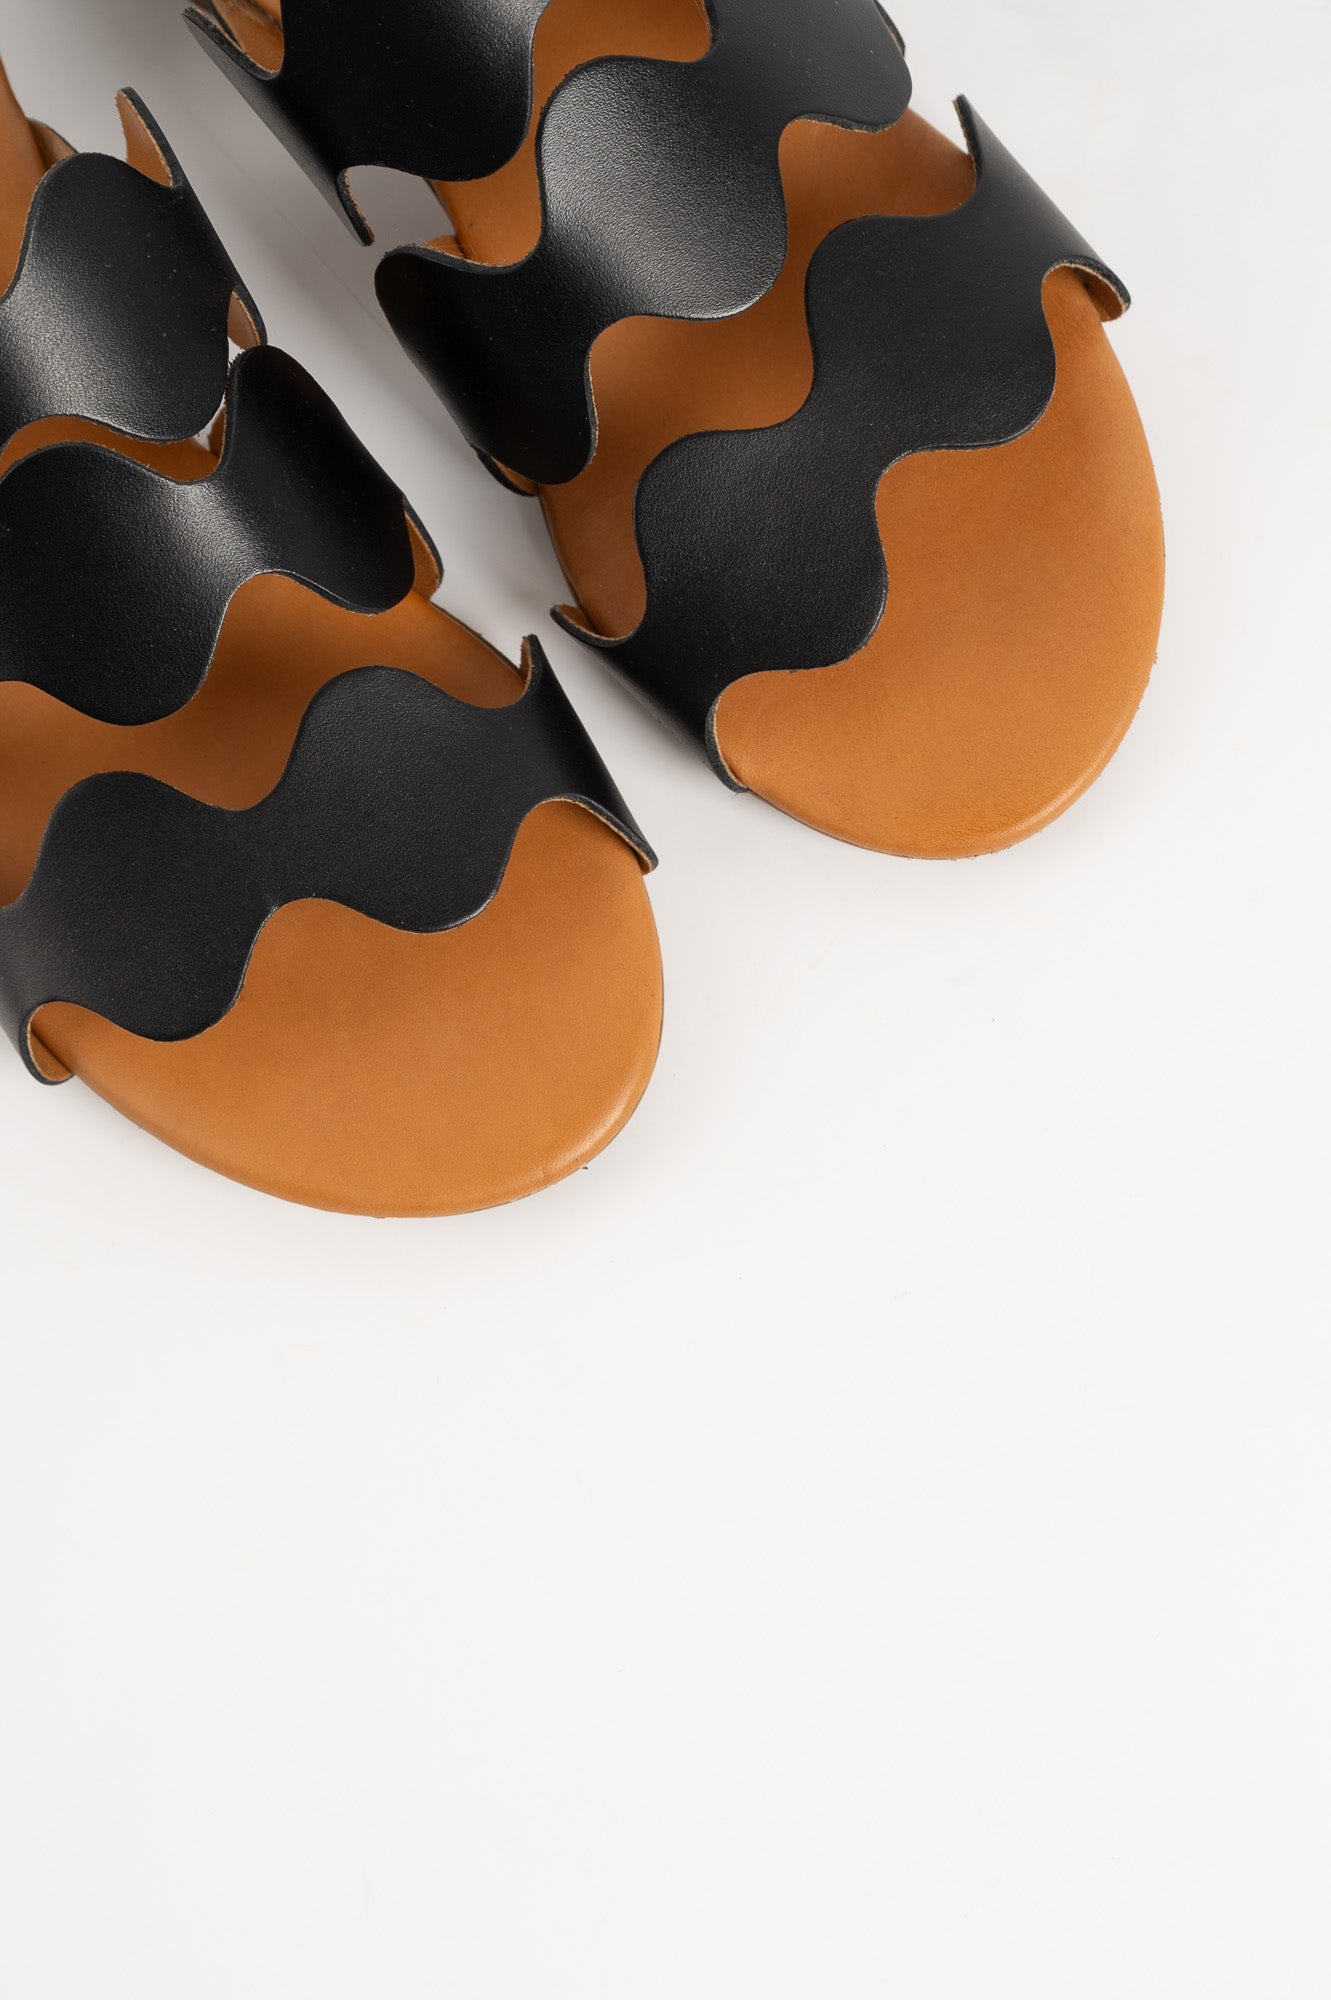 Sandal Wave 338 | Black Leather